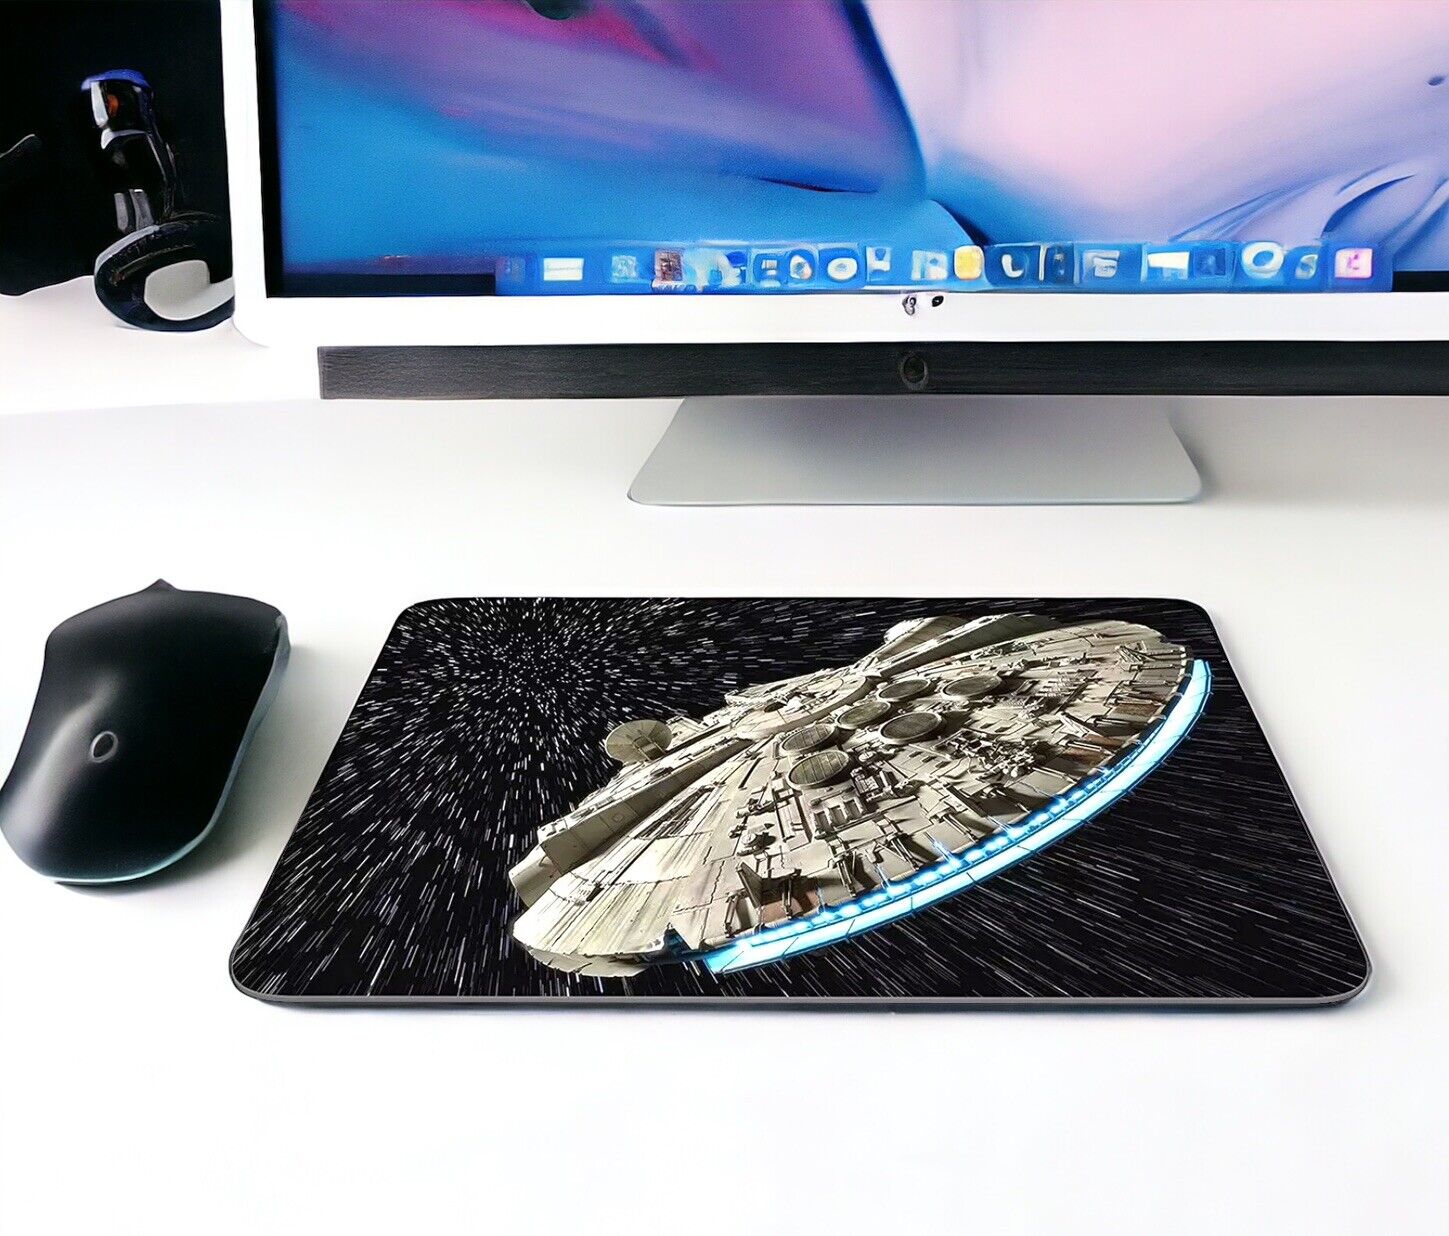 Star Wars Millennium Falcon 9” Neoprene Computer Mouse Pad Nonslip Rubber Decor